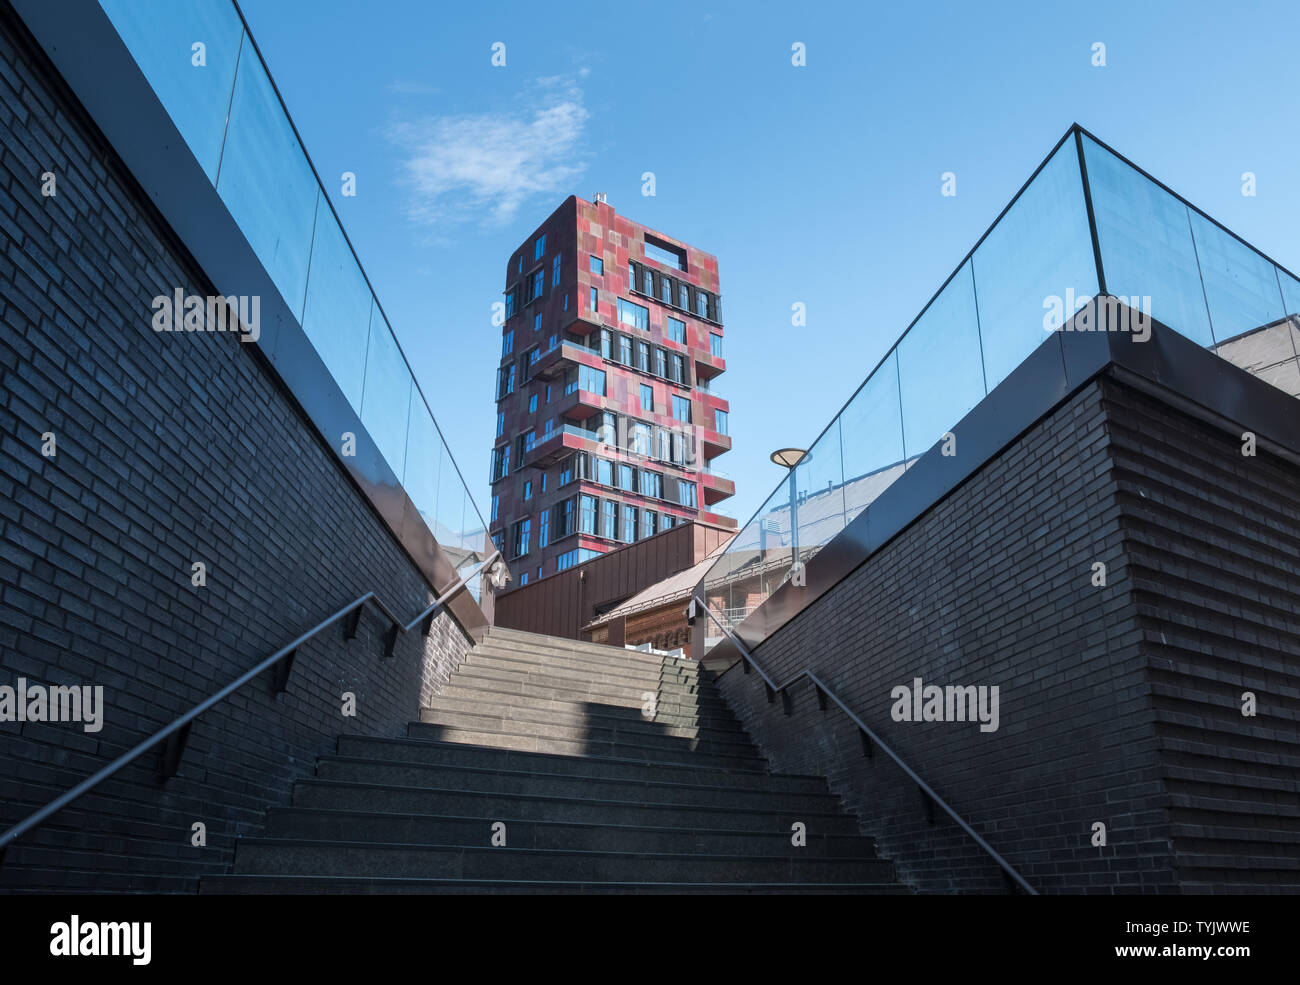 Panneaux de revêtement en aluminium anodisé de l'ocre, Russet et bourgogne rouge a utilisé sur le bâtiment de la tour de cannelle, Osakaallee, HafenCity, Hambourg, Allemagne. Banque D'Images